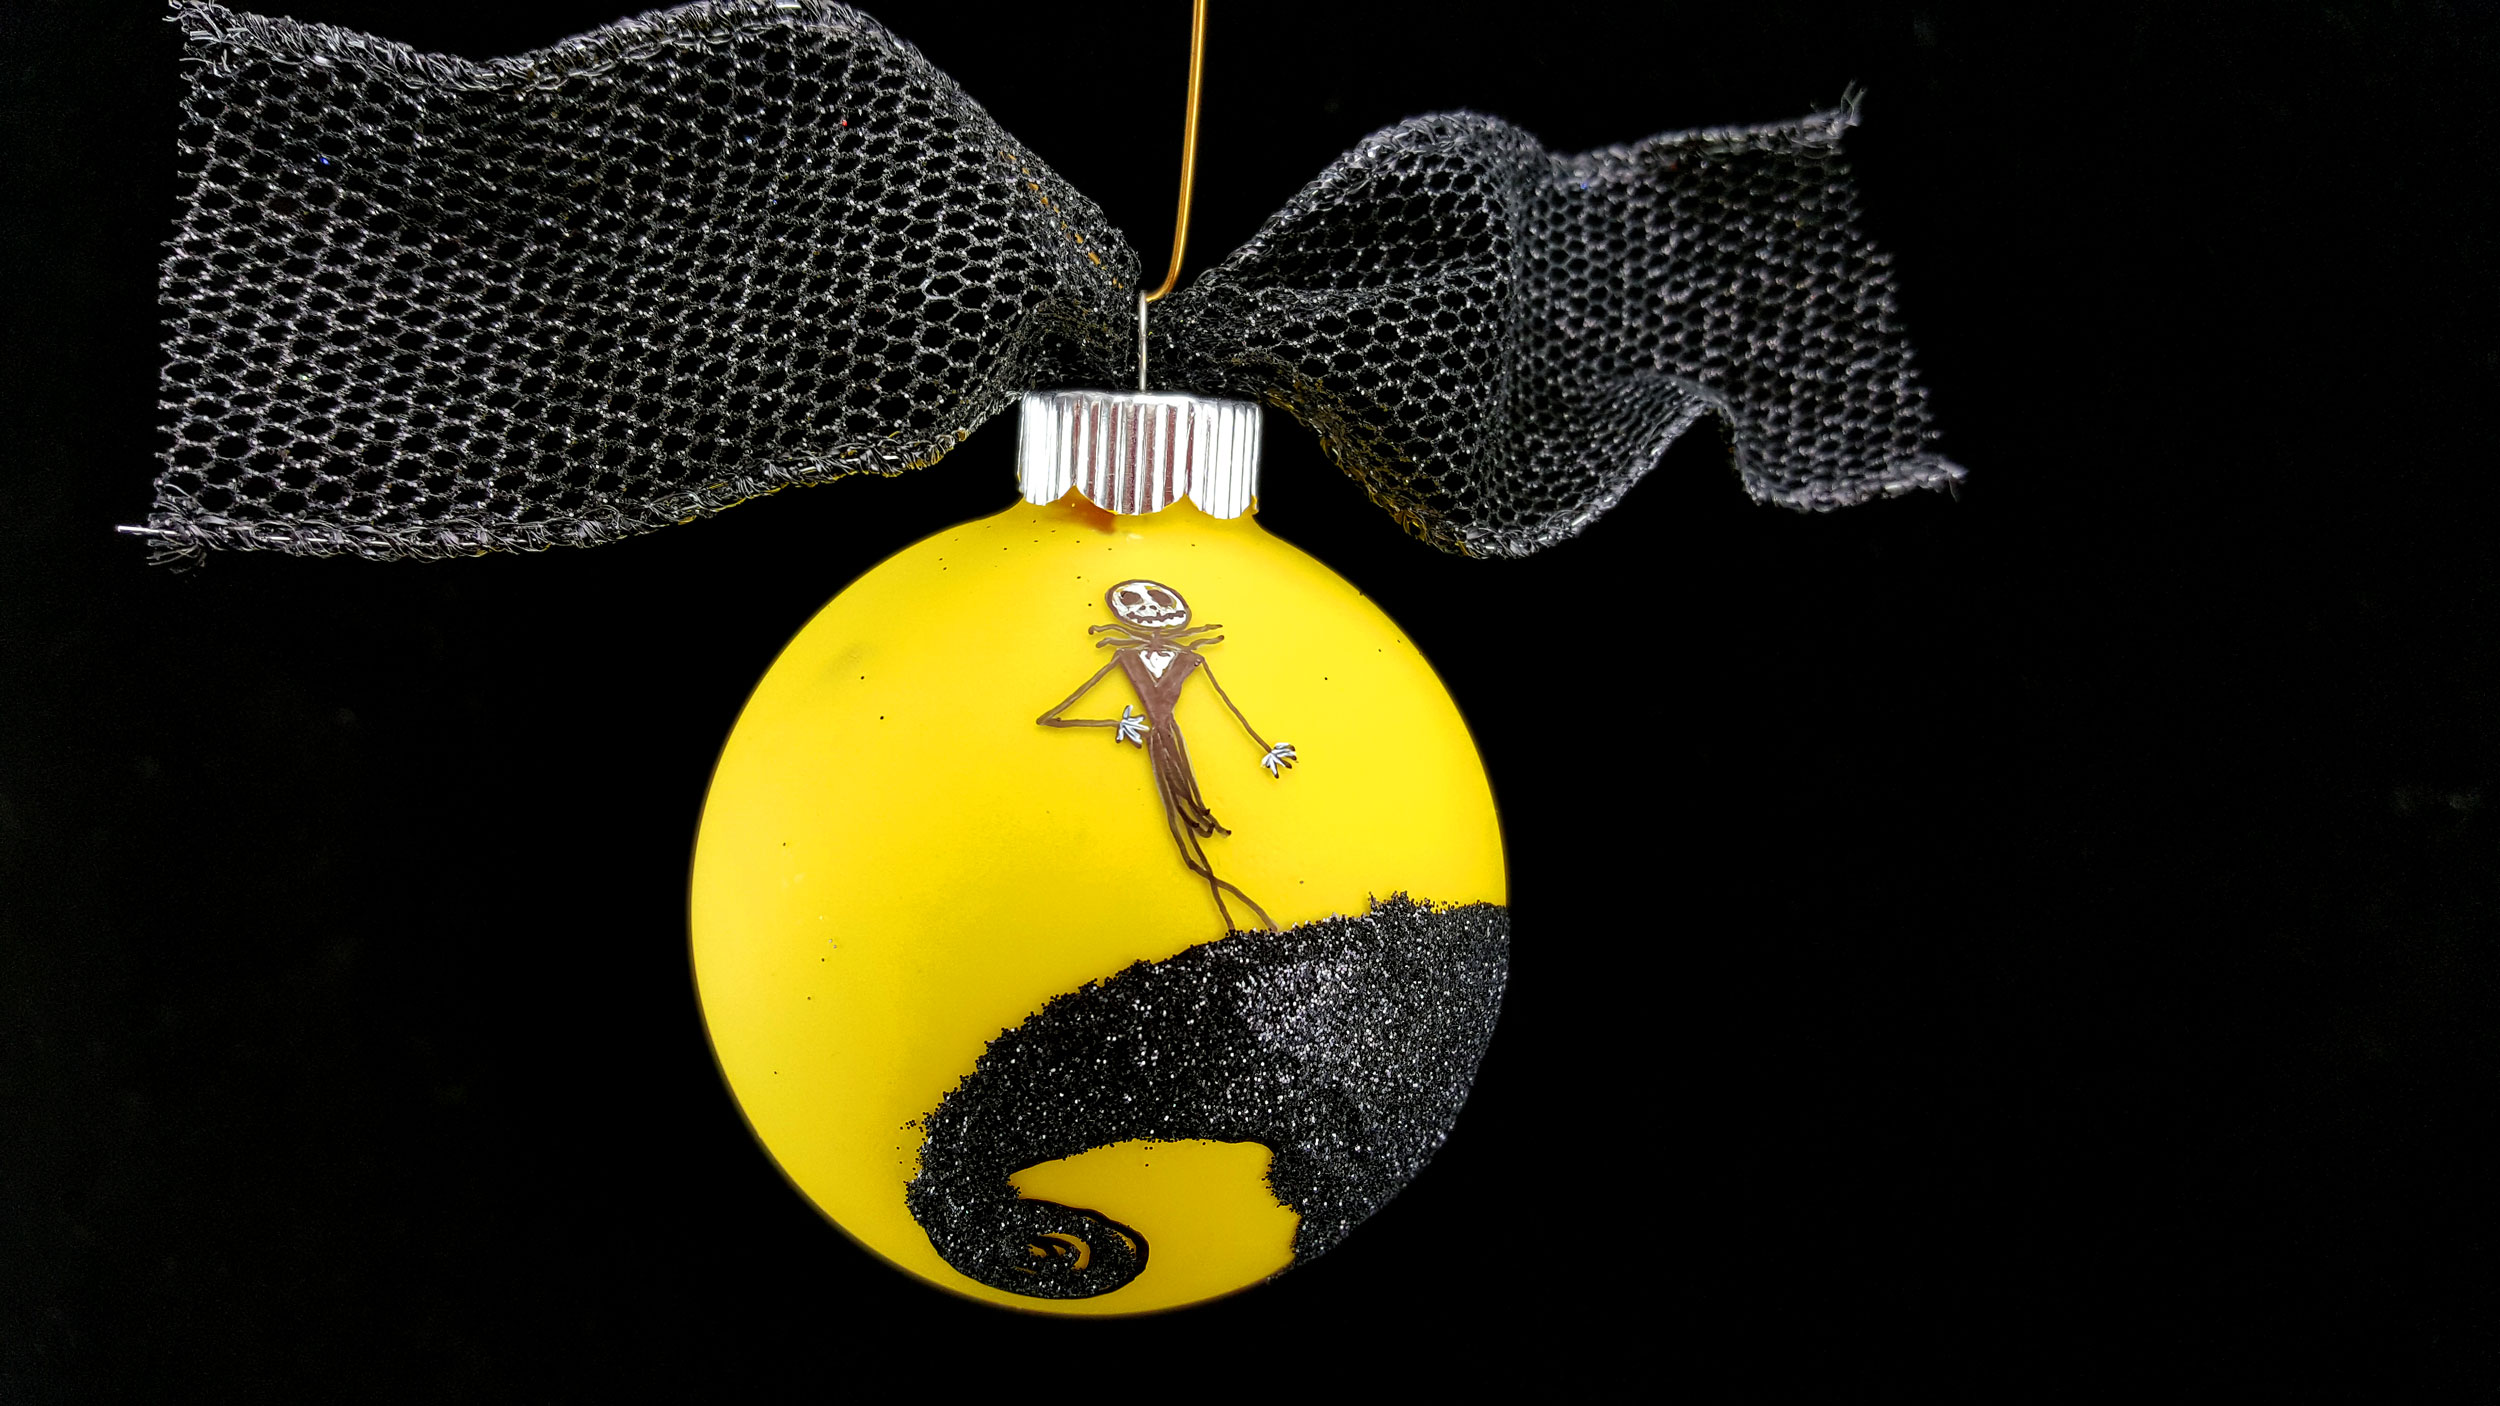 DIY Nightmare Before Christmas Ornaments Featuring Jack Skellington | OrnamentShop.com